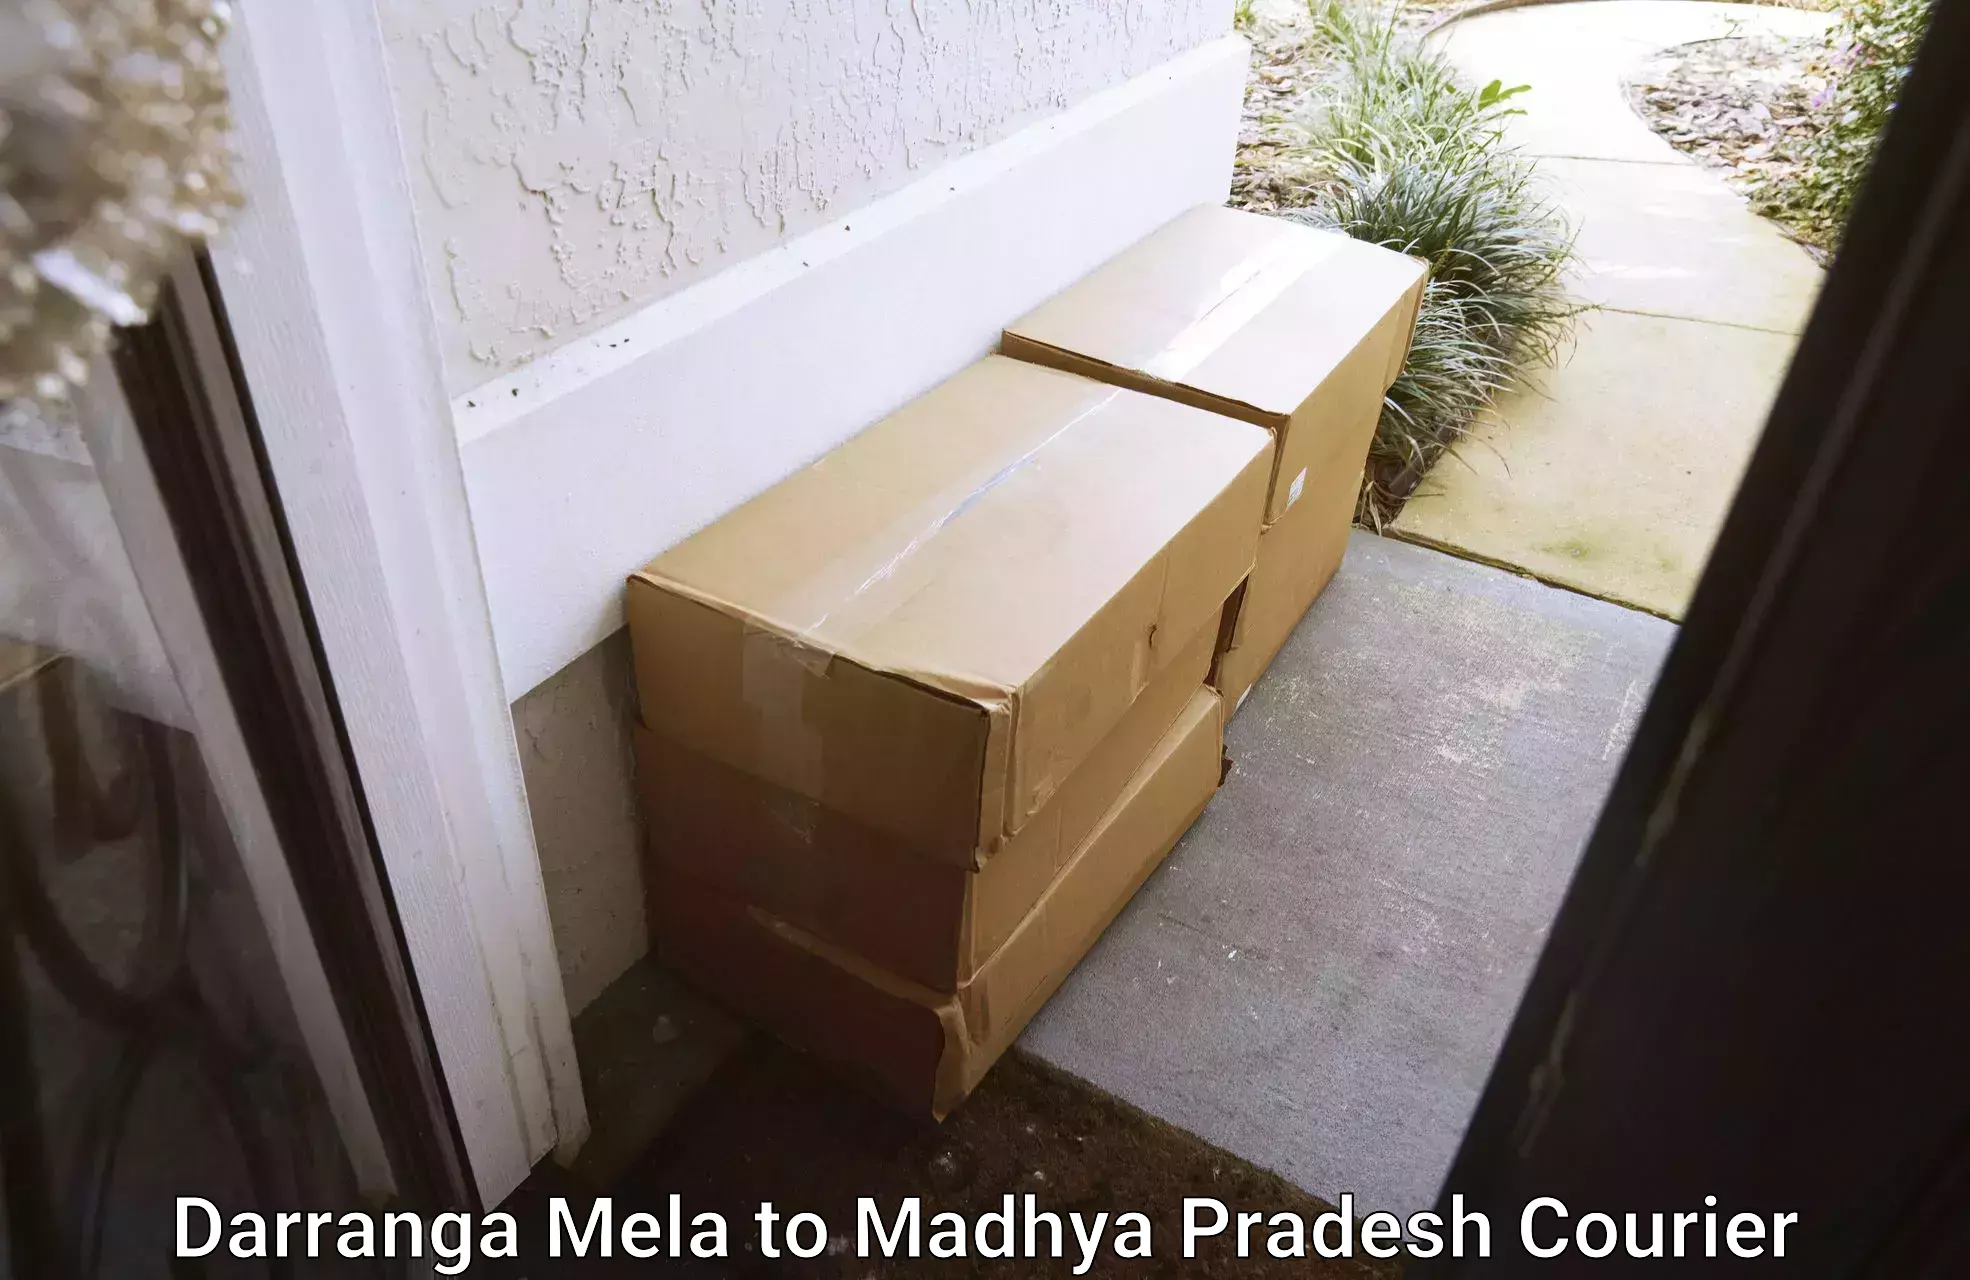 Delivery service partnership Darranga Mela to Ranchha